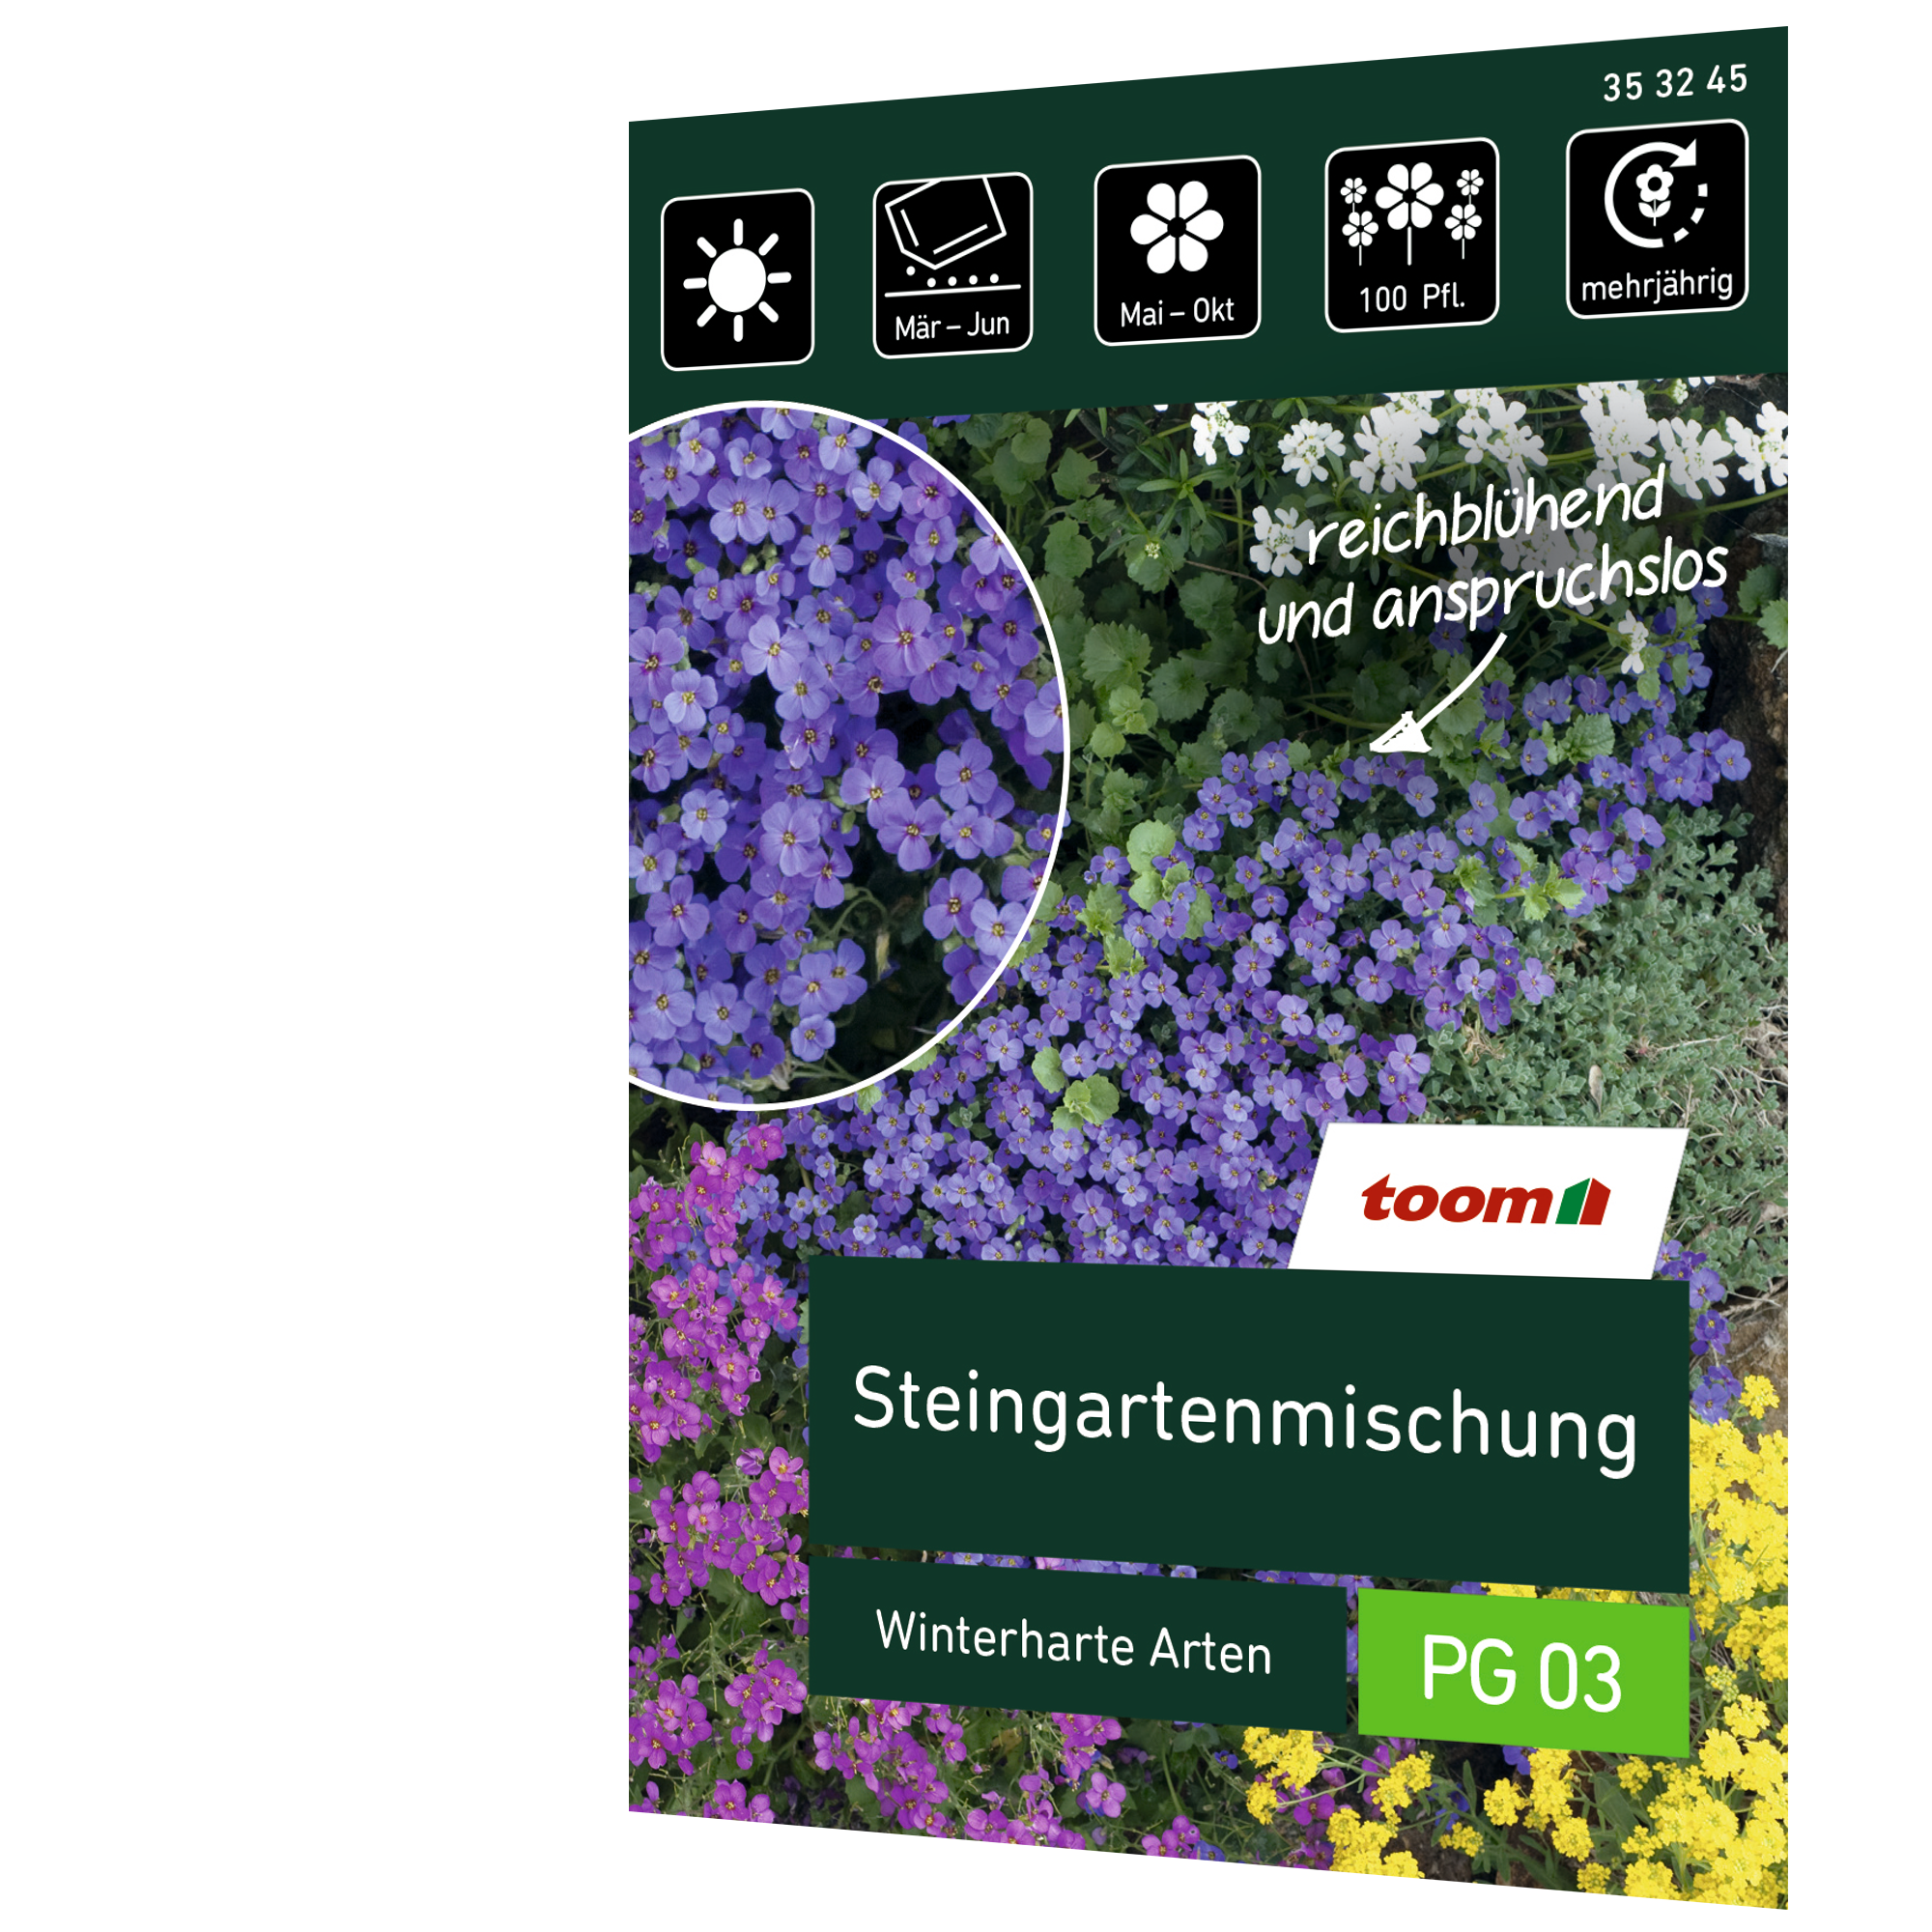 Steingartenmischung 'Winterharte Sorten' + product picture